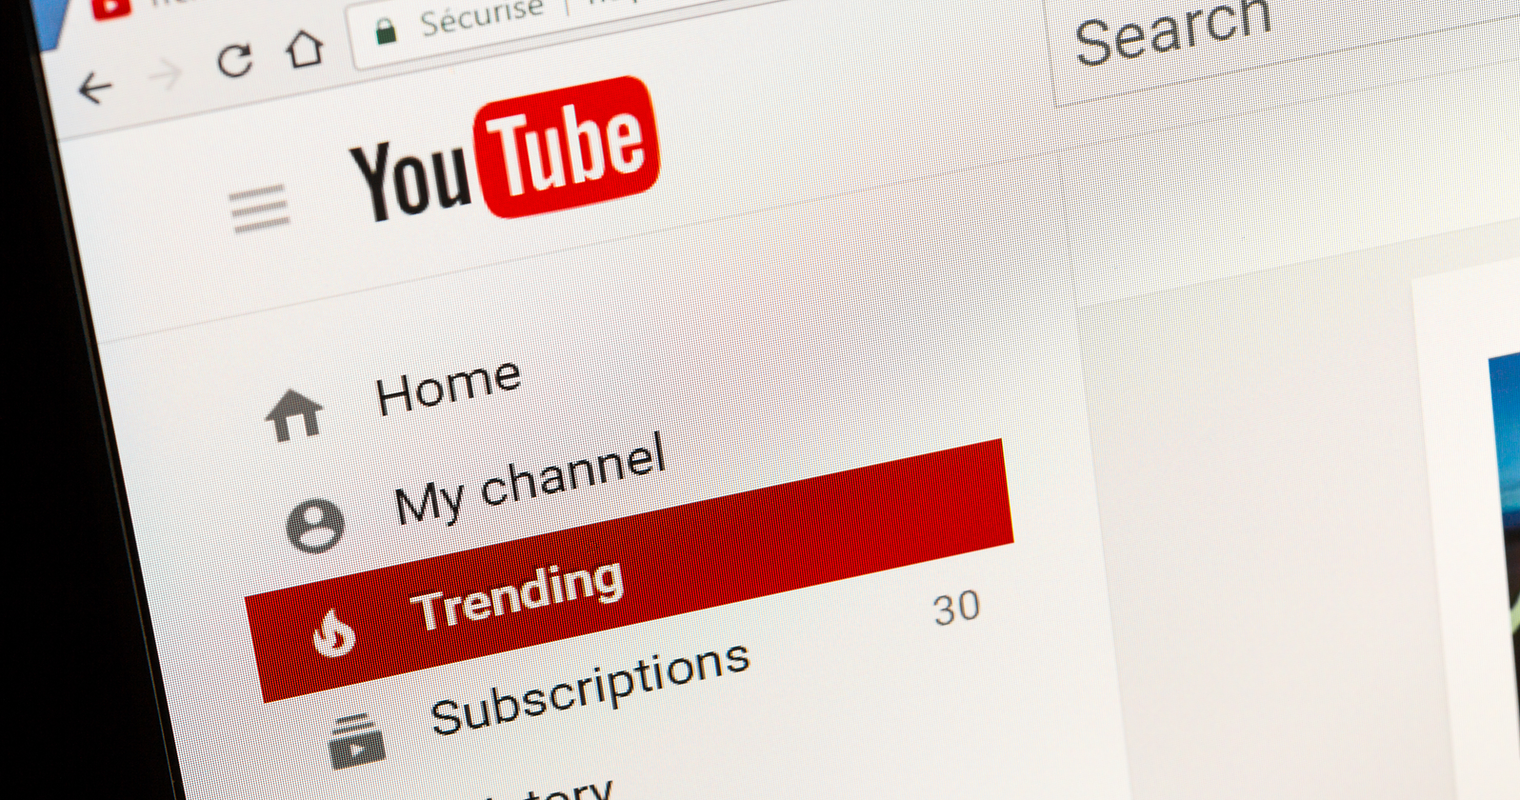 Top-Trending 2020 YouTube Videos Demonstrate Longer Is Stronger